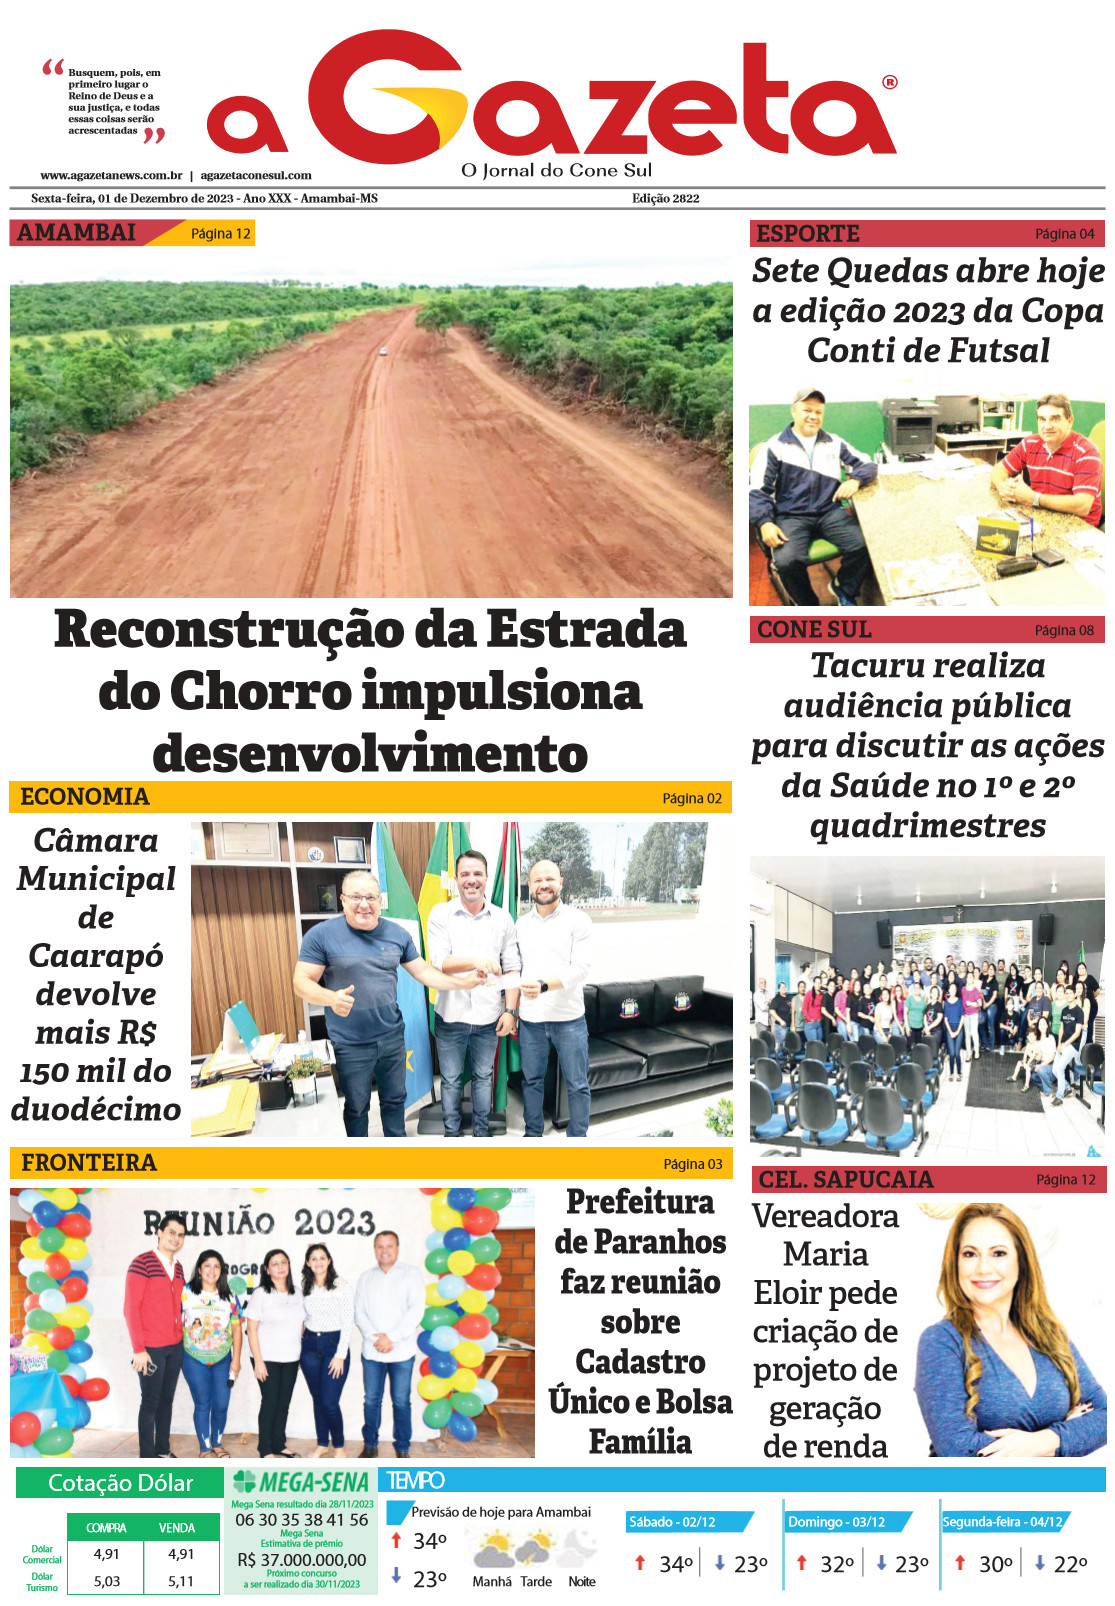 Confira a edição digital do jornal impresso A Gazeta desta sexta-feira, dia 1º de dezembro